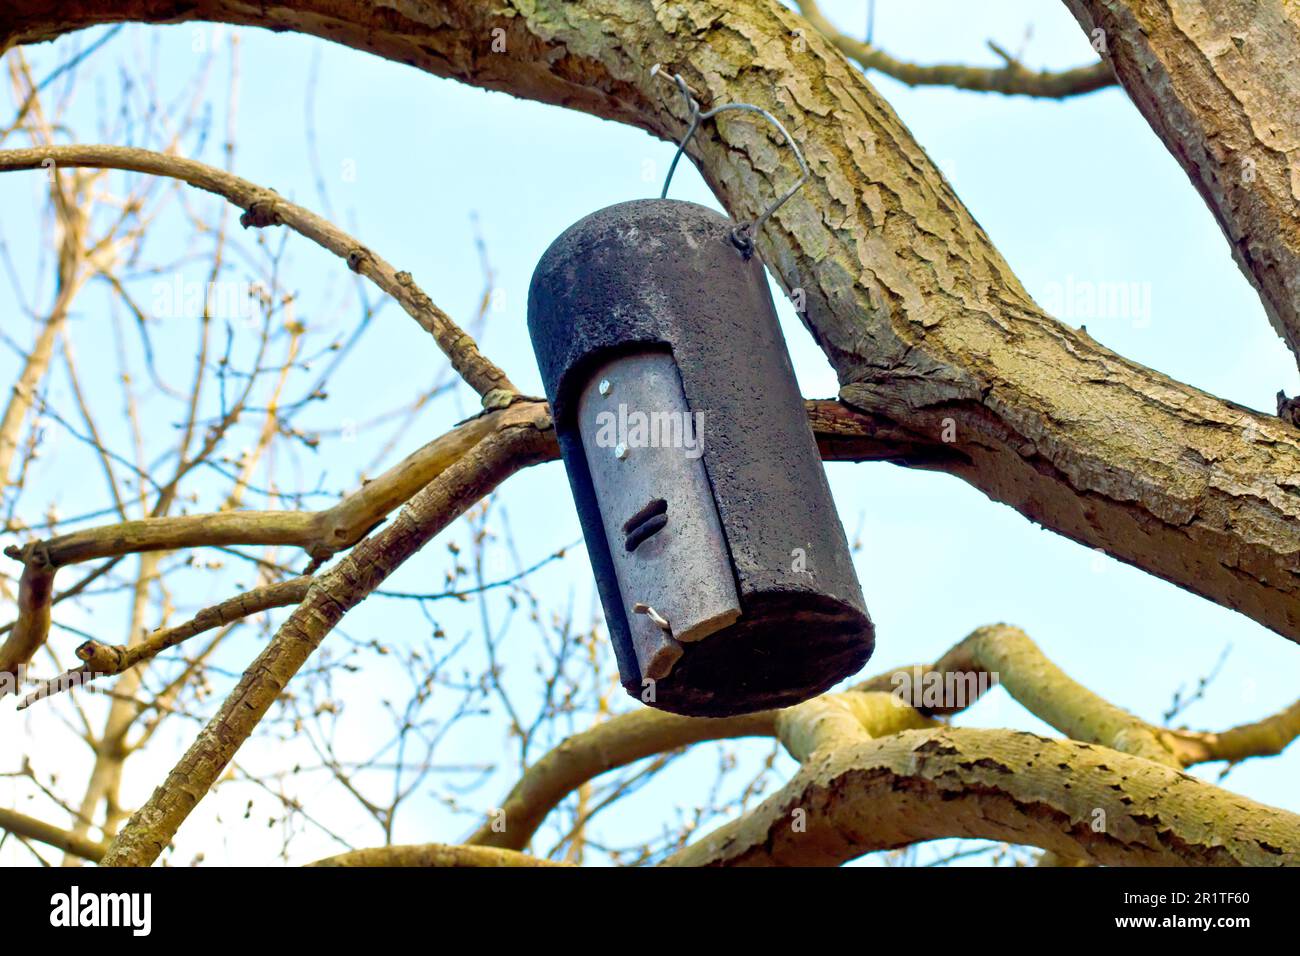 Primo piano di una scatola di pipistrelli, un capriolo artificiale per pipistrelli, appeso al ramo di un albero in un ambiente boschivo. Foto Stock